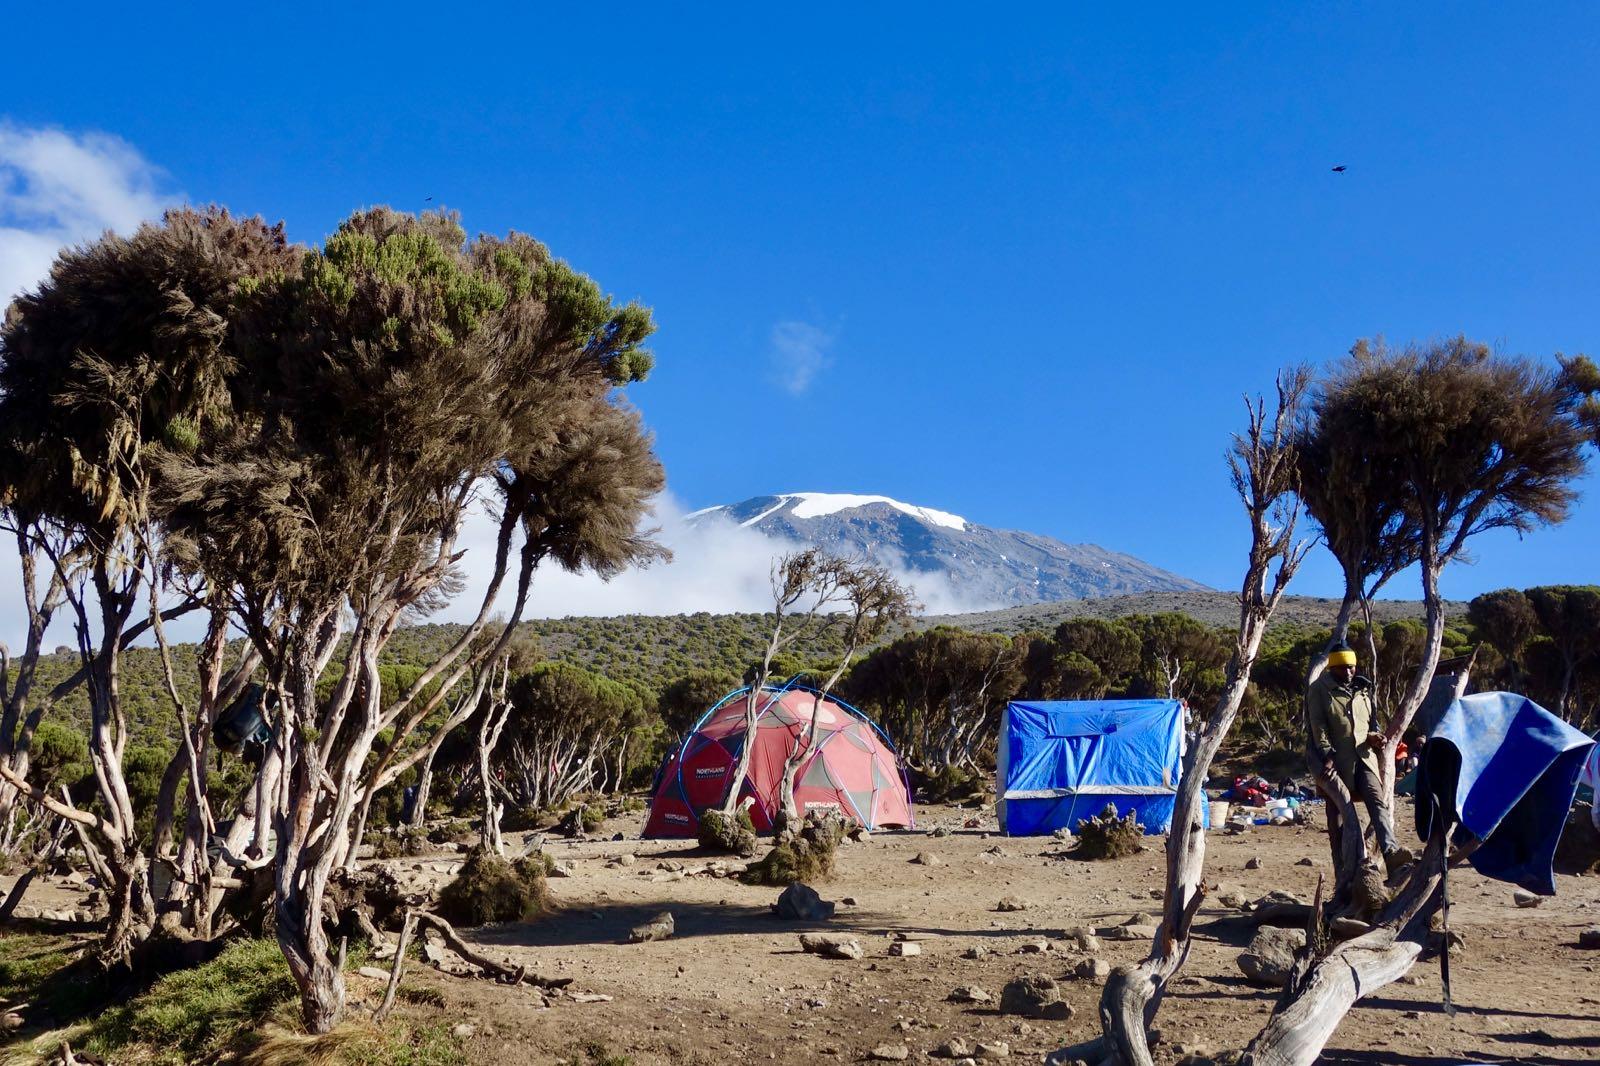 Millenium camp, Kilimanjaro